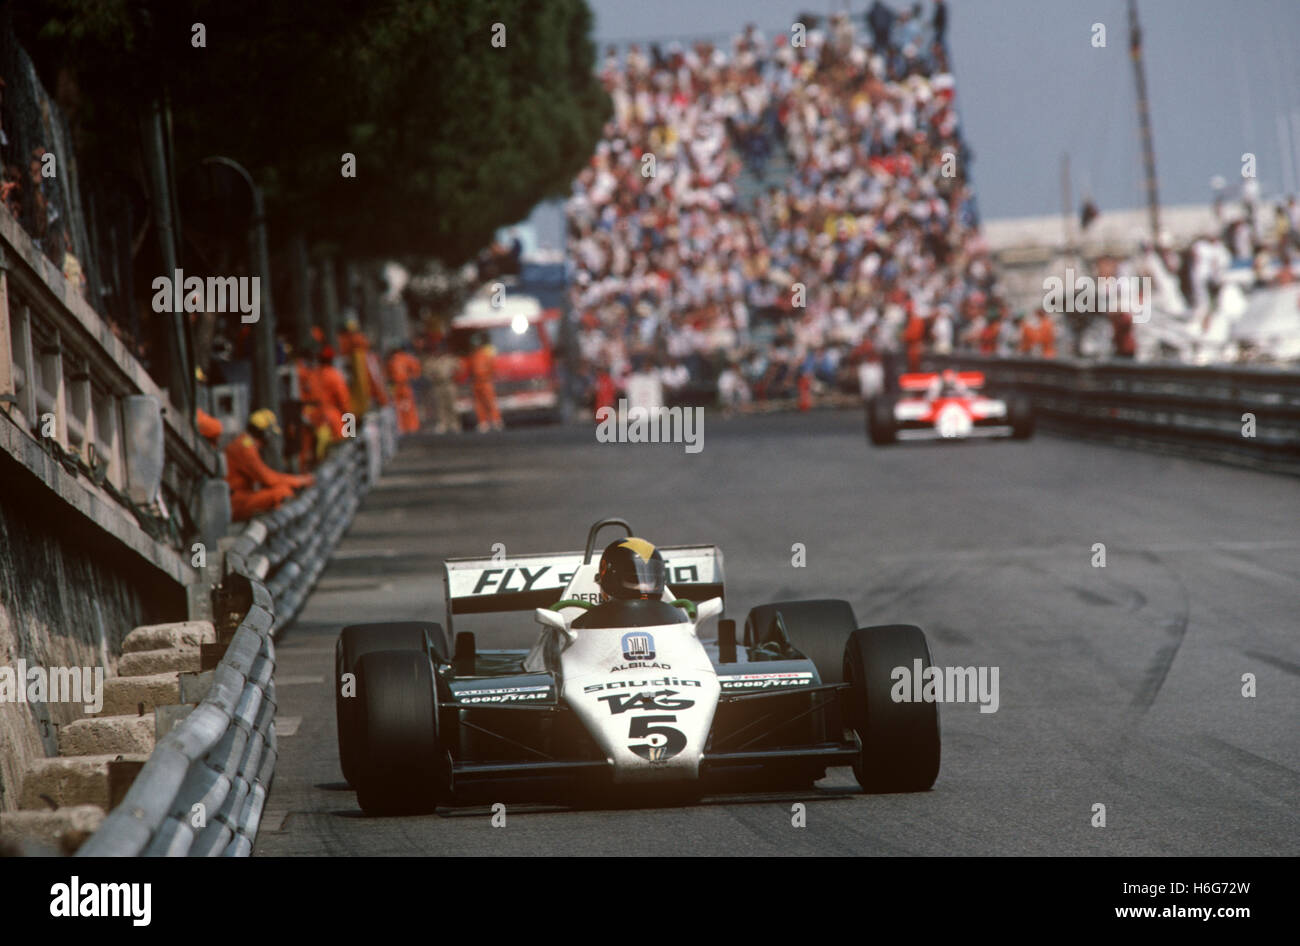 GP di Monaco e Monte Carlo, 23 maggio 1981. Derek Daly - Williams-Cosworth - in pensione Foto Stock